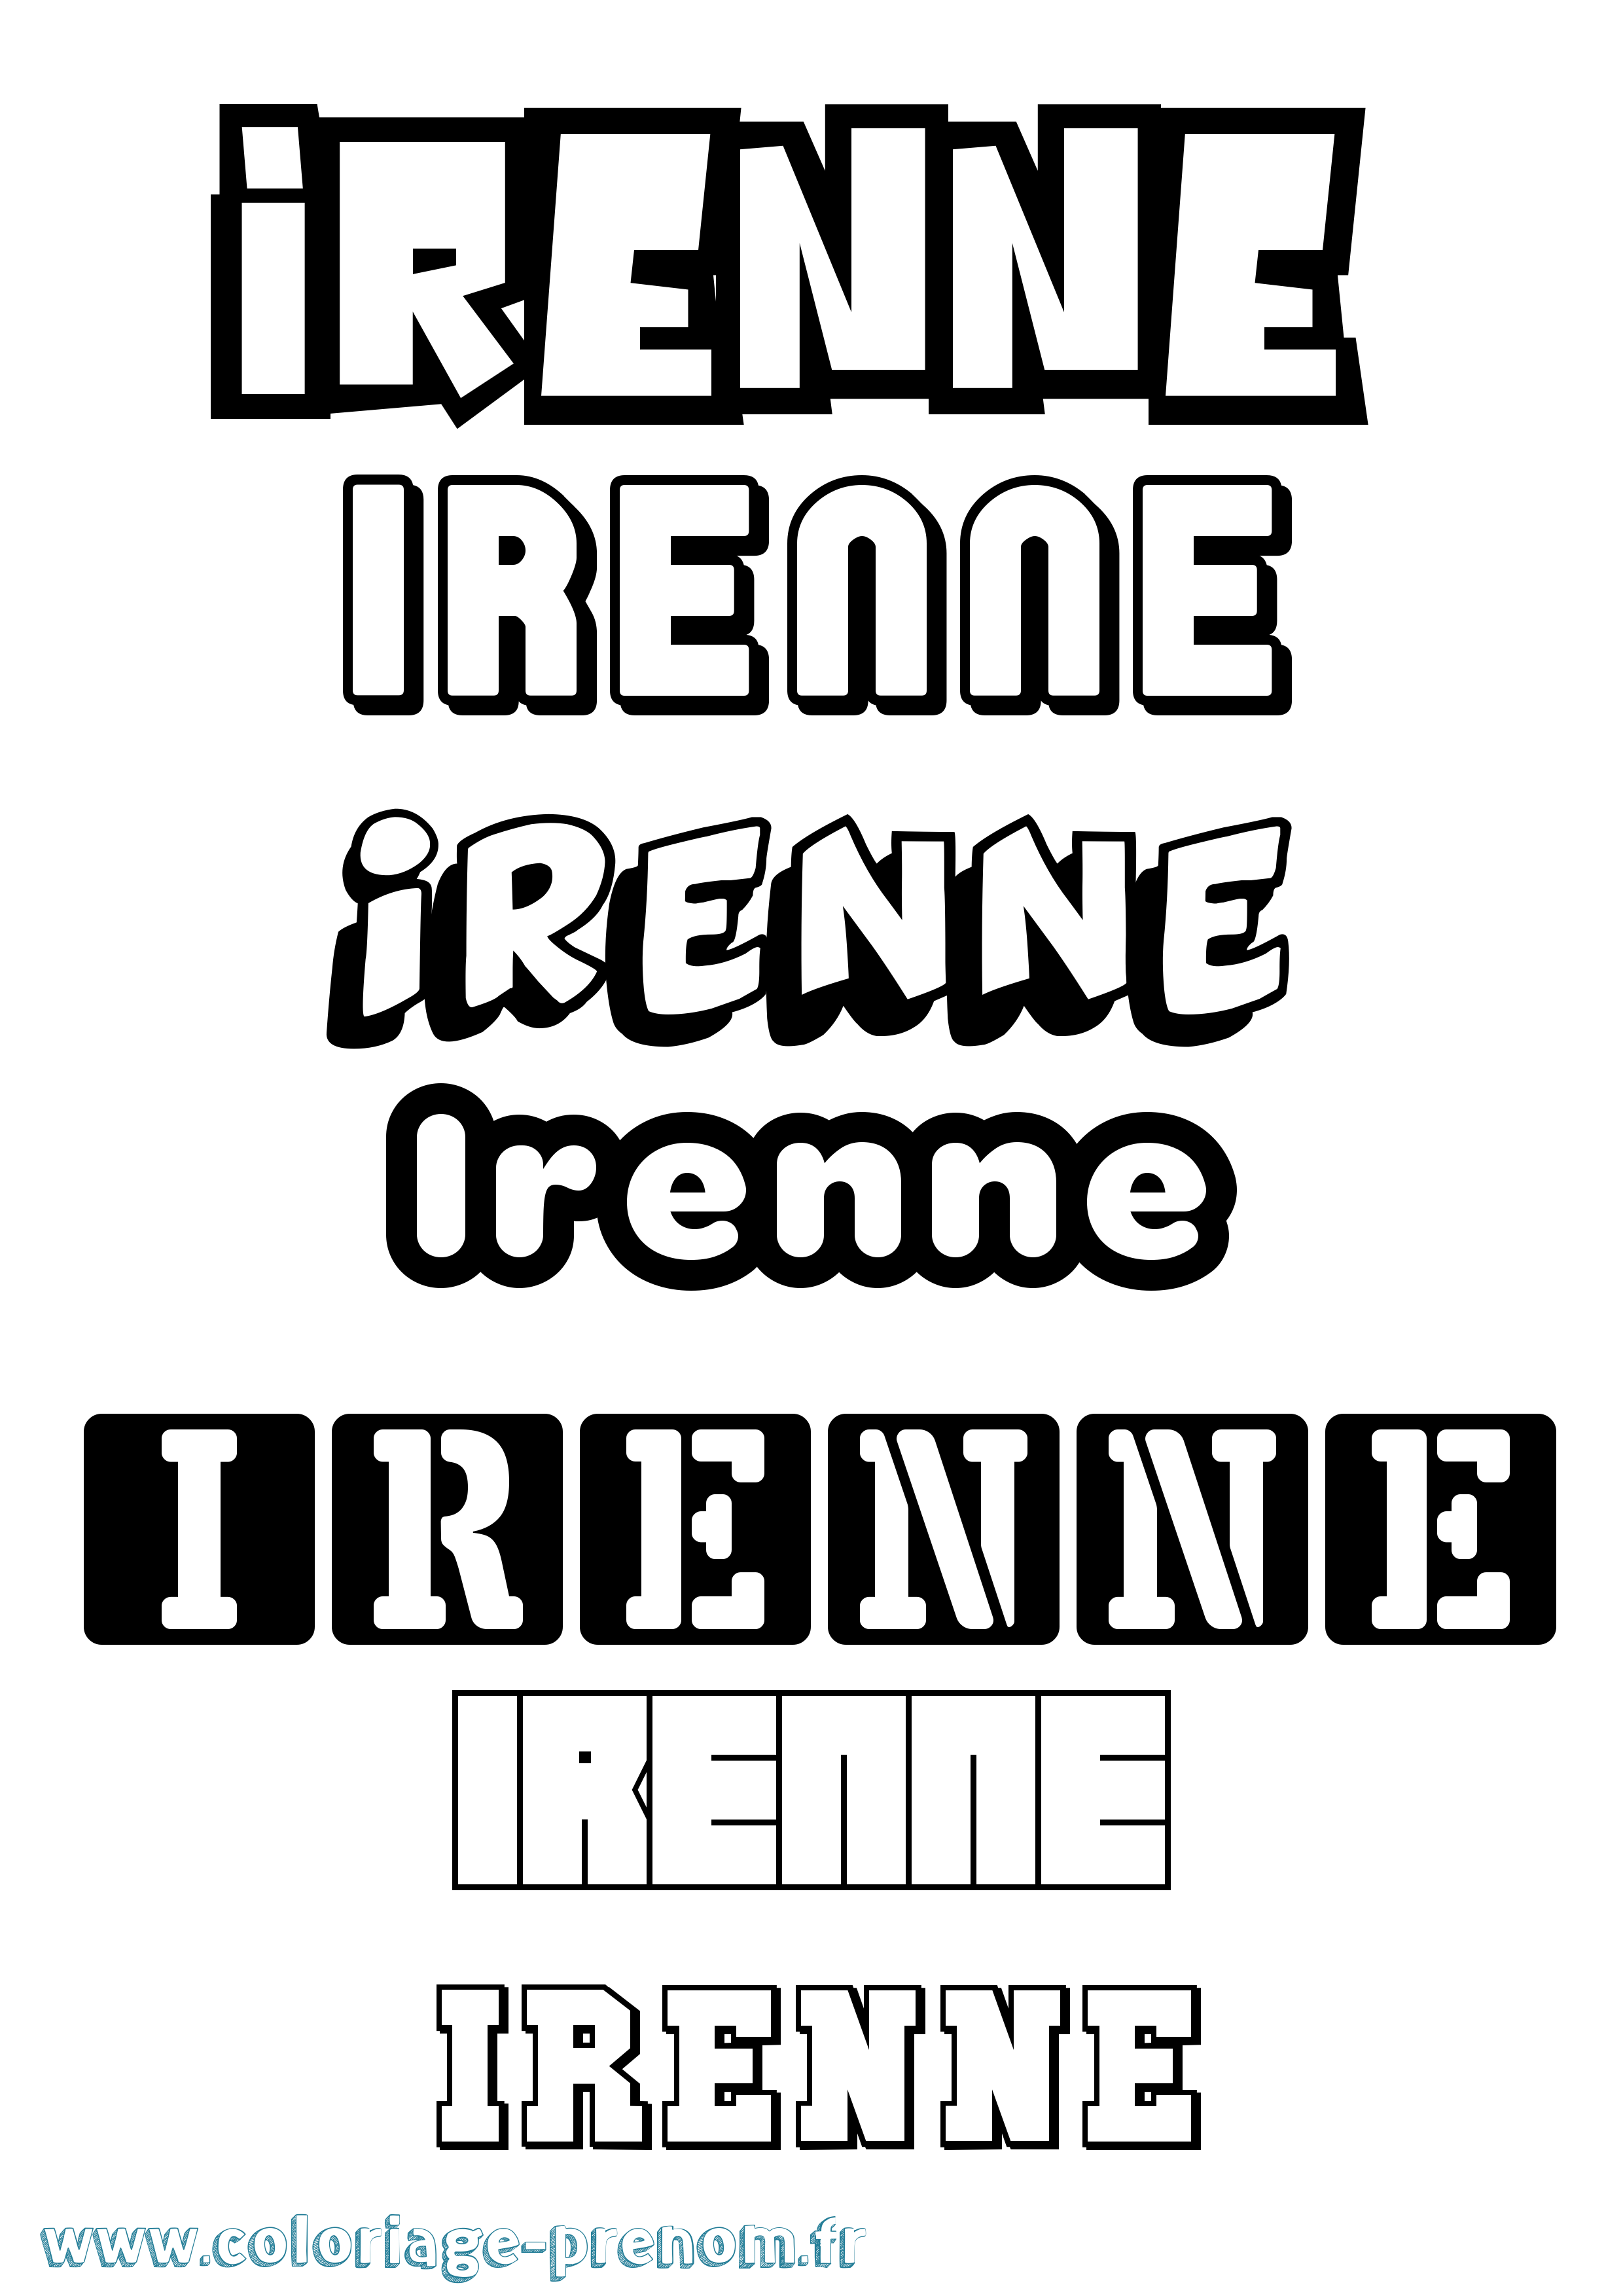 Coloriage prénom Irenne Simple